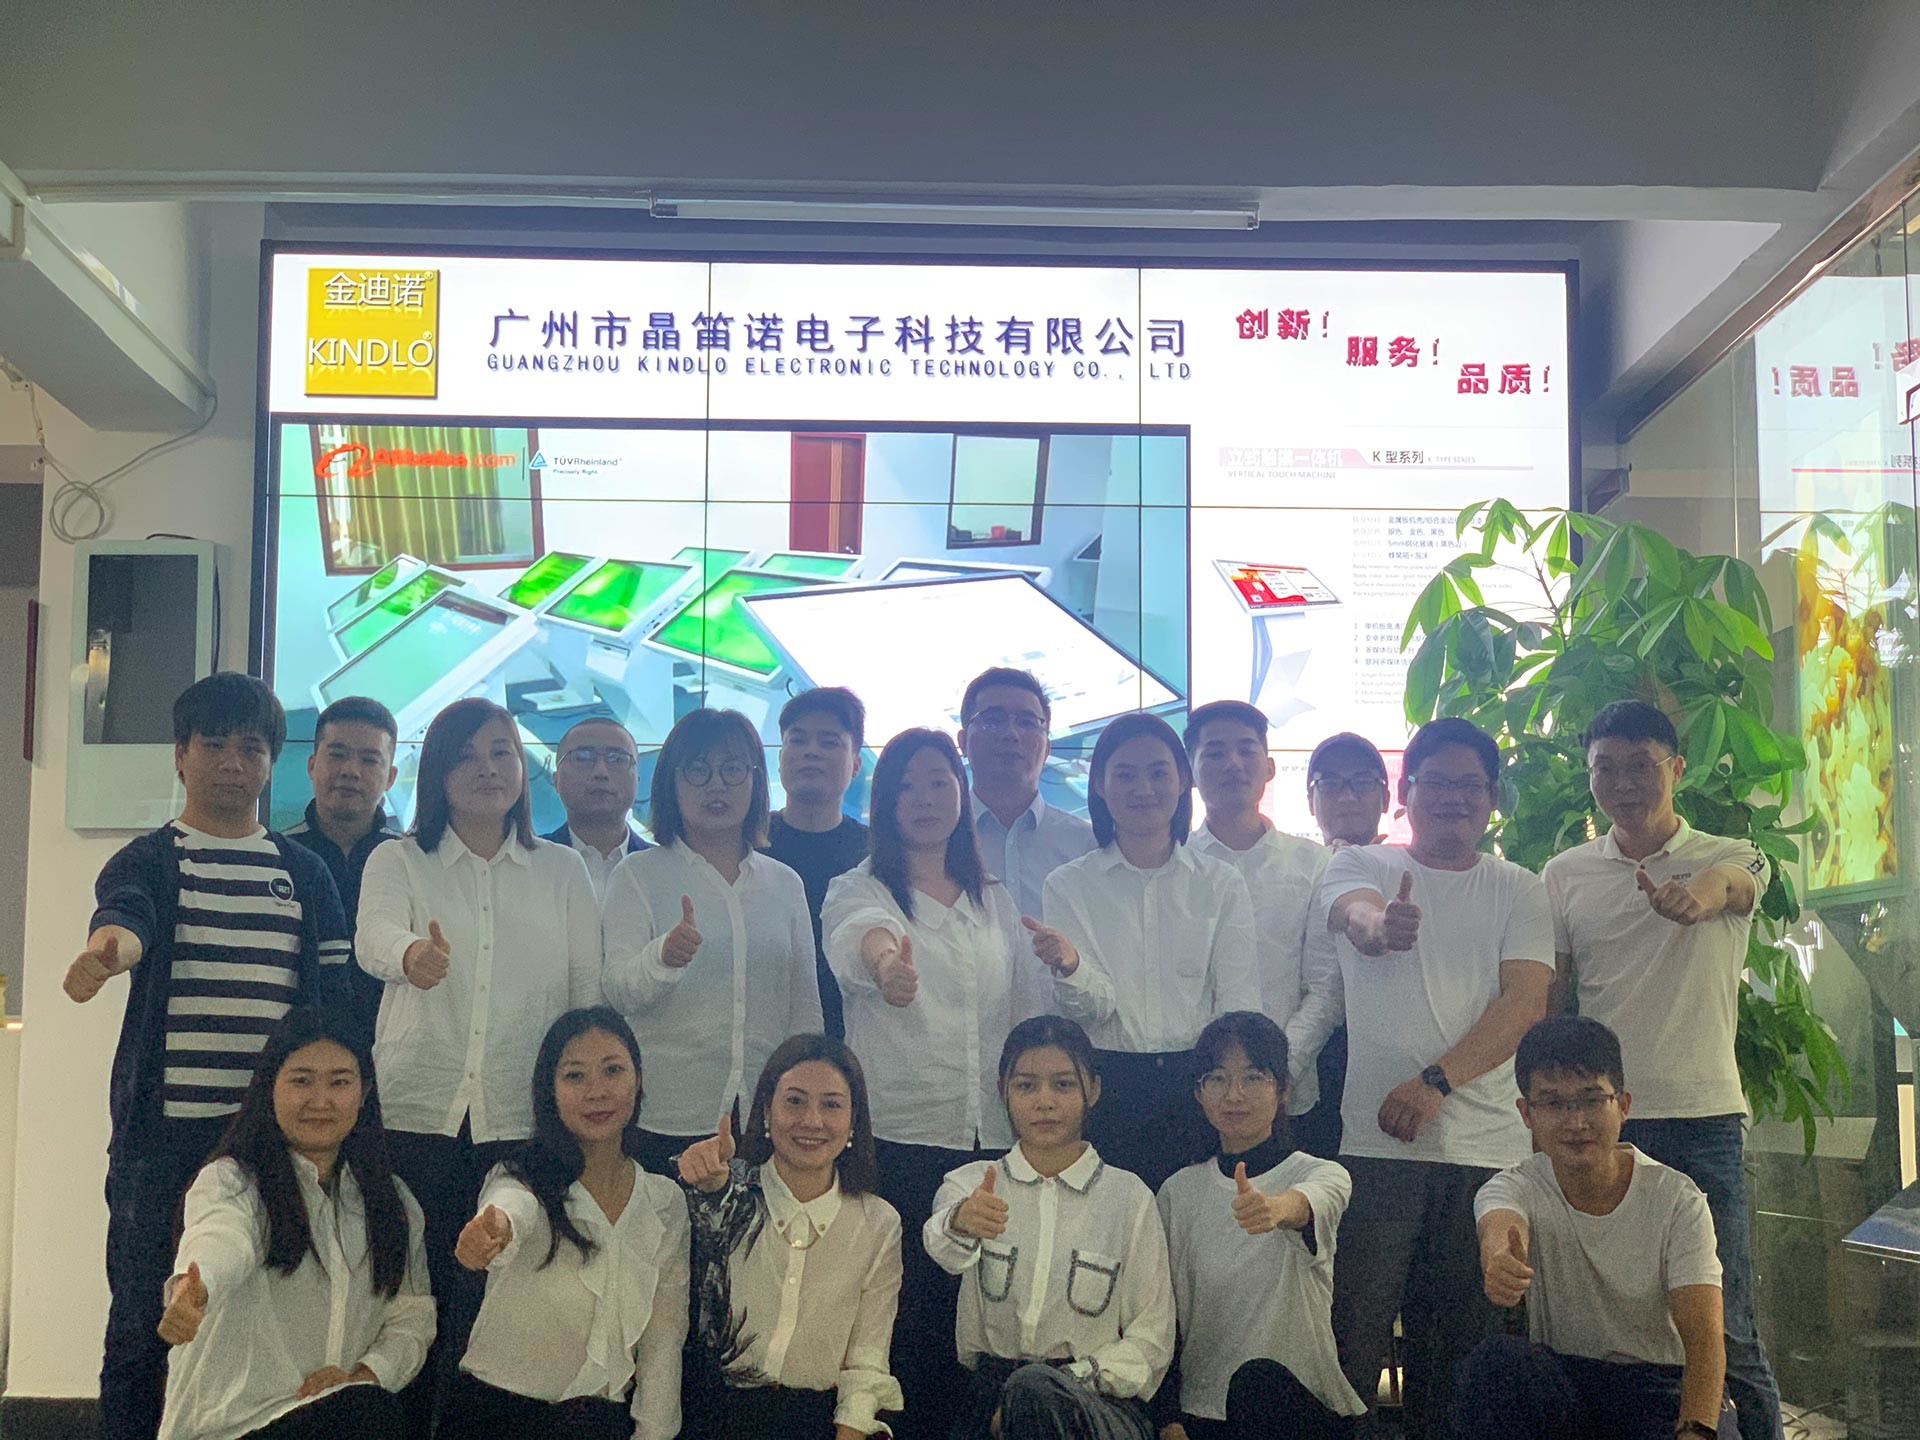 چین Guangzhou Jingdinuo Electronic Technology Co., Ltd. نمایه شرکت